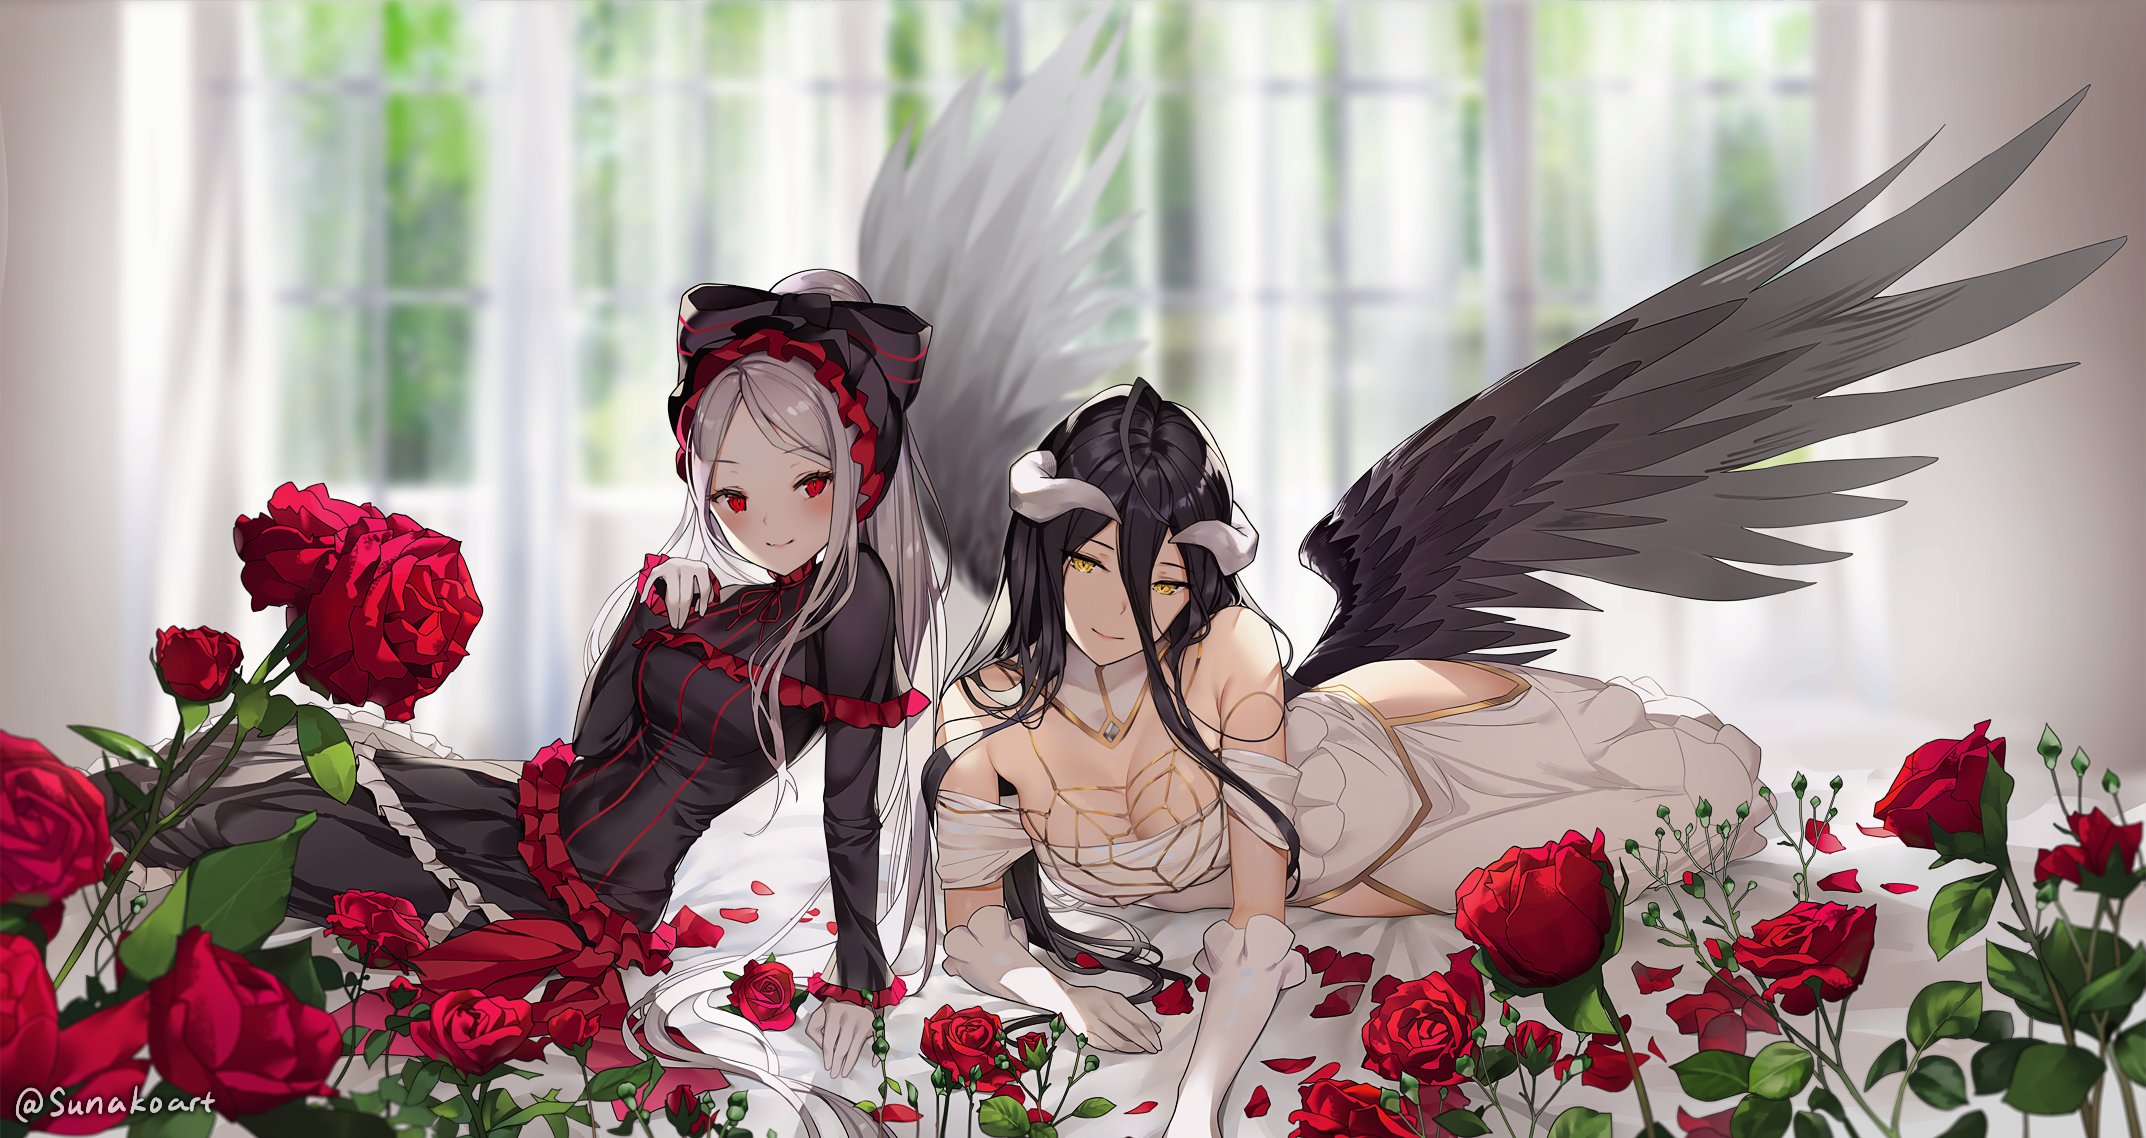 Overlord Anime Shalltear Albedo OverLord Demon Girl Vampires Wings Roses Anime Anime Girls Red Eyes 2146x1138